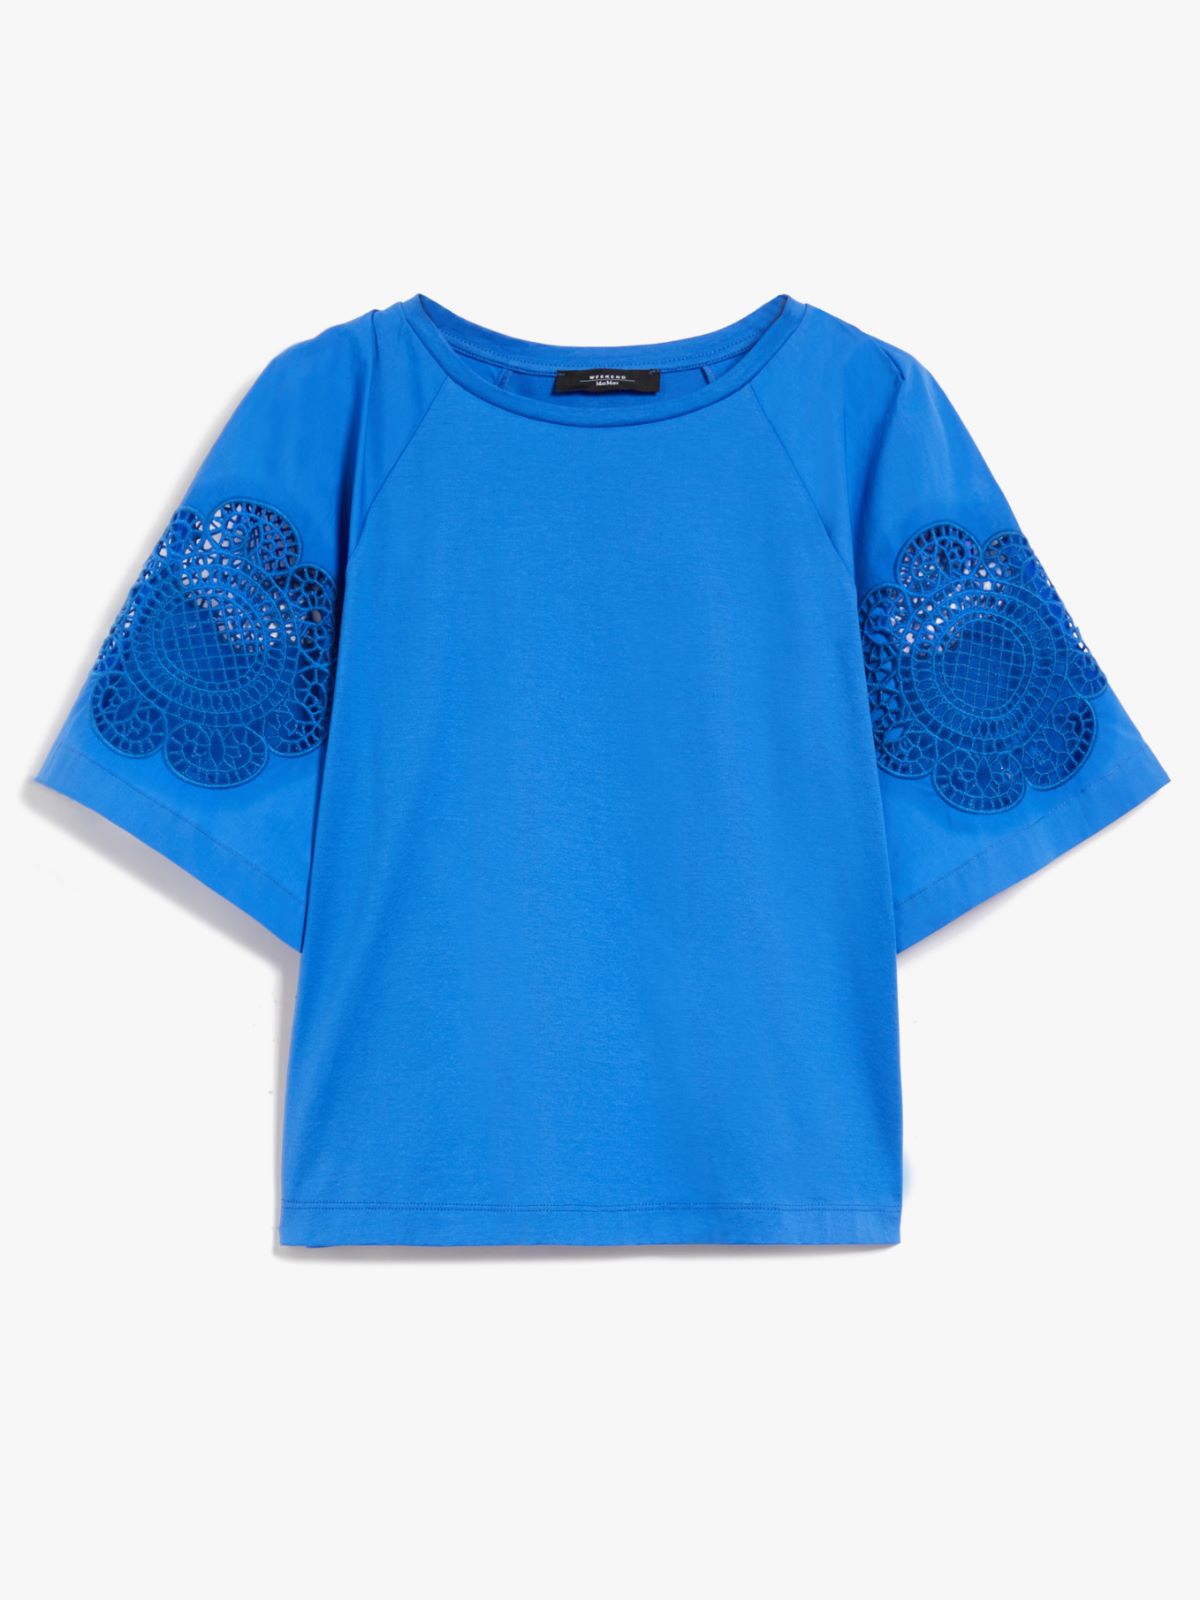 Cotton jersey T-shirt - CORNFLOWER BLUE - Weekend Max Mara - 6